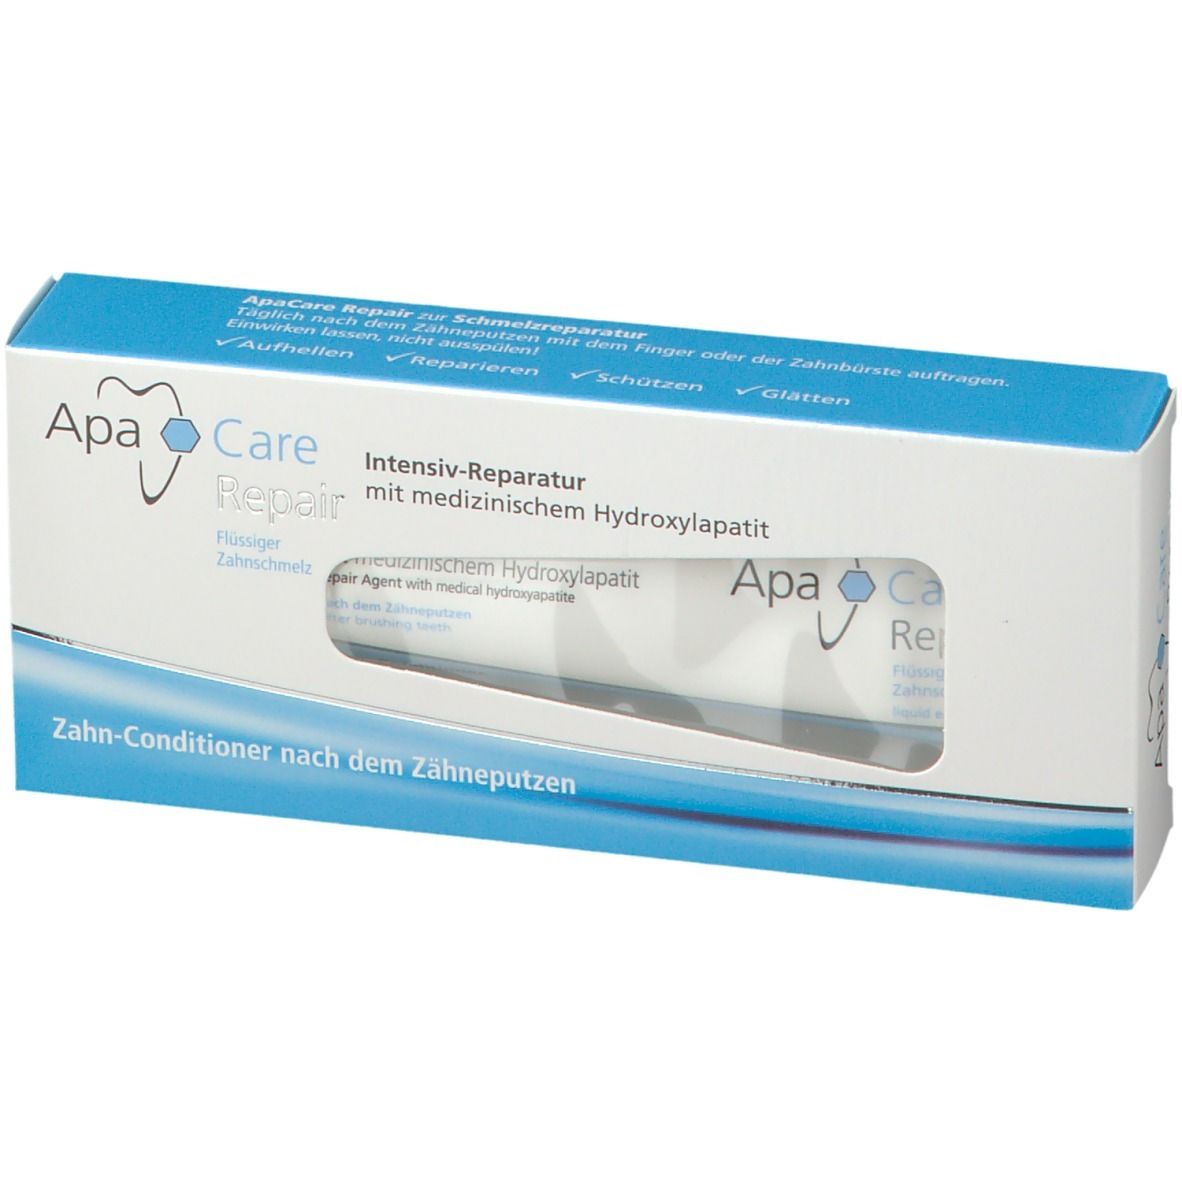 ApaCare & Repair Zahnreparatur-Gel 30 ml - Redcare Apotheke